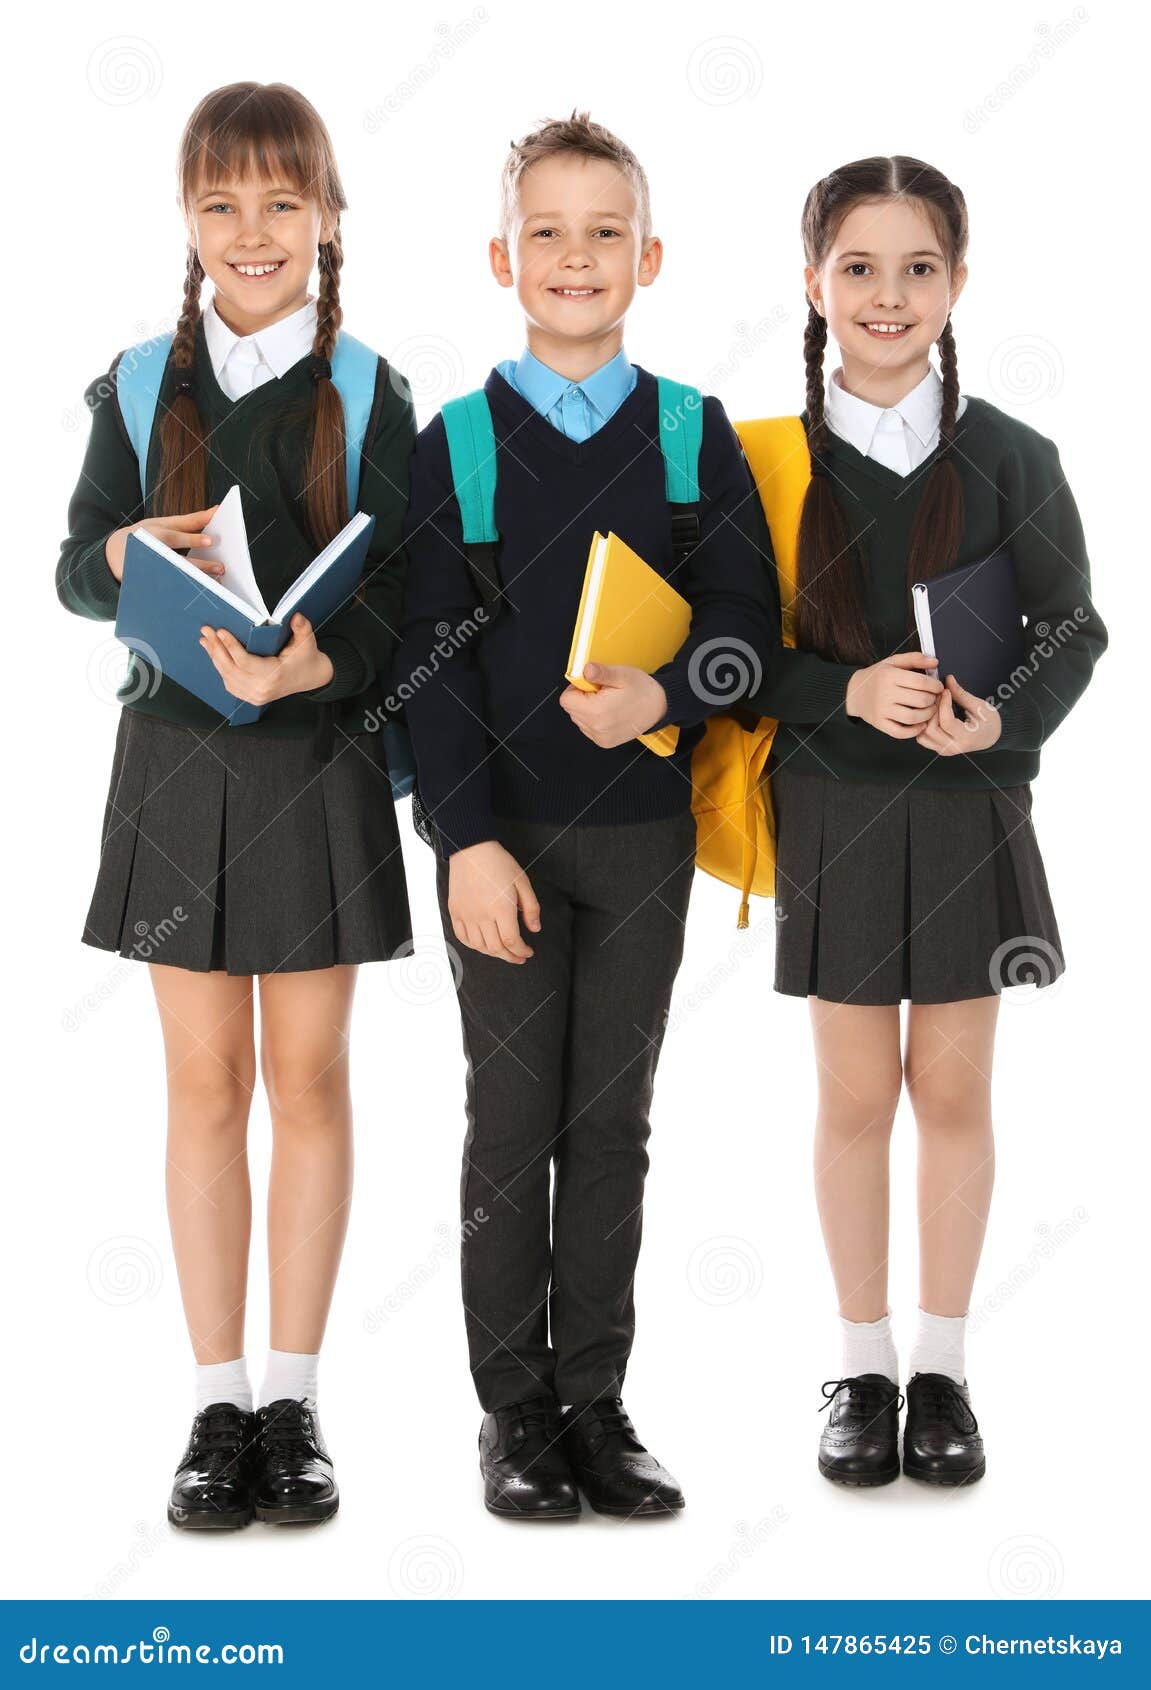 Retrato De Niños Lindos En Uniforme Escolar Con Las Mochilas Y Los Libros En Blanco Imagen de archivo - Imagen de poco, 147865425